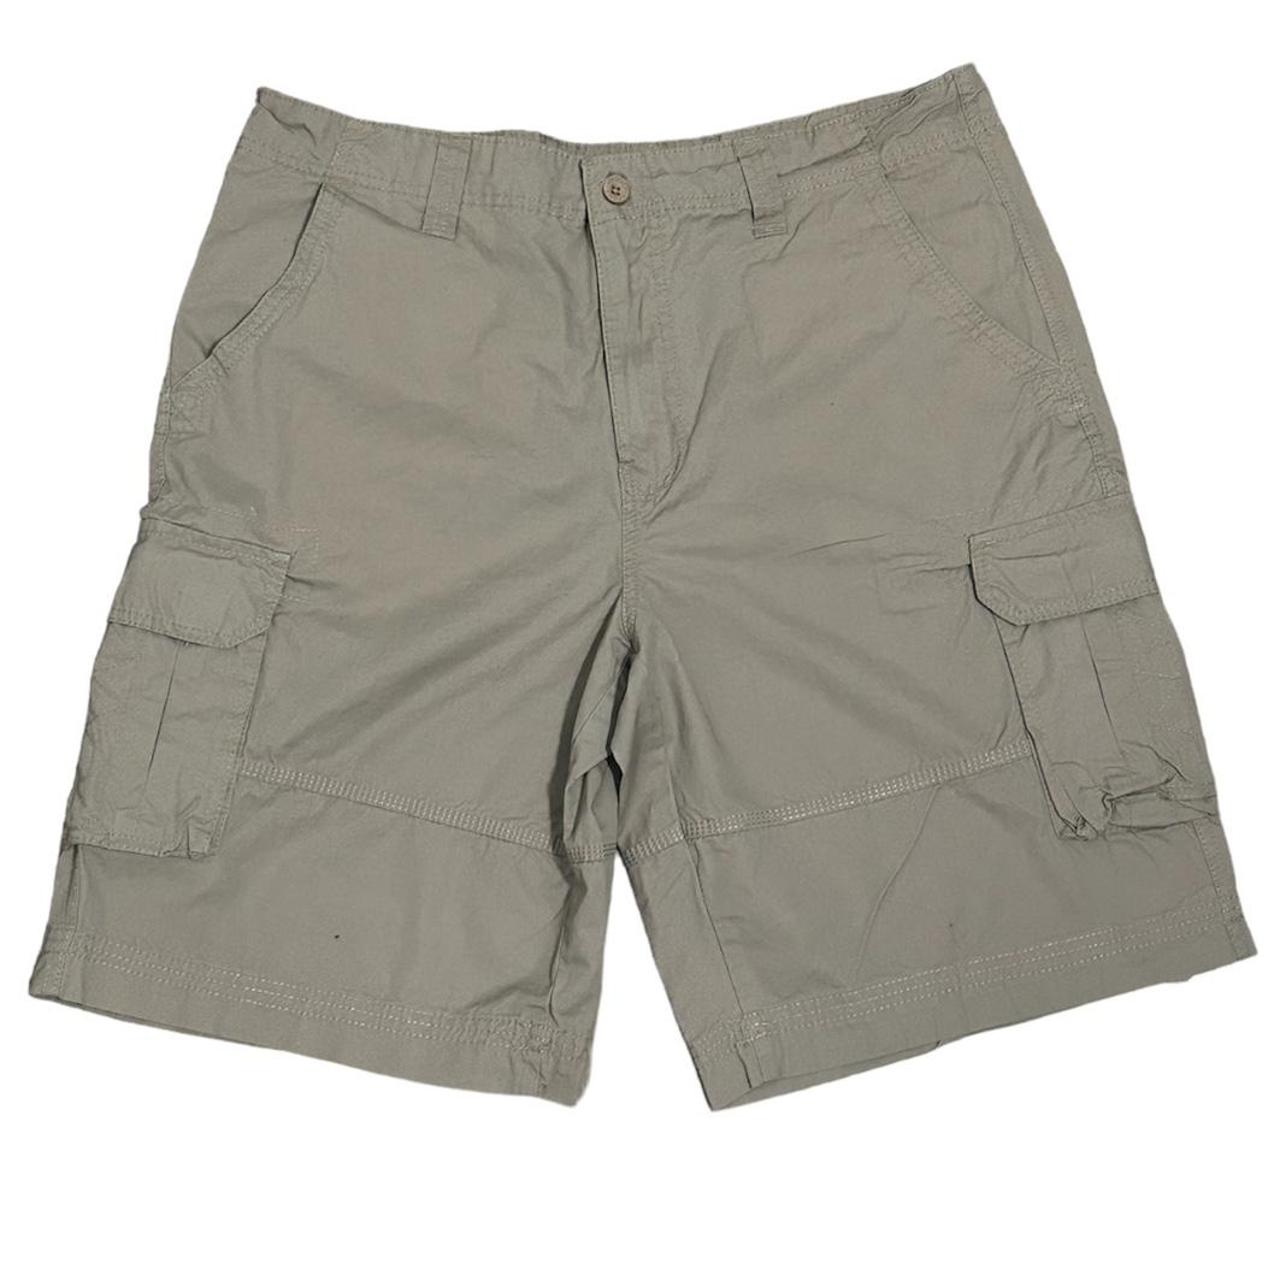 Khaki Cargo Shorts Size 36 #cargos #shorts #vintage - Depop